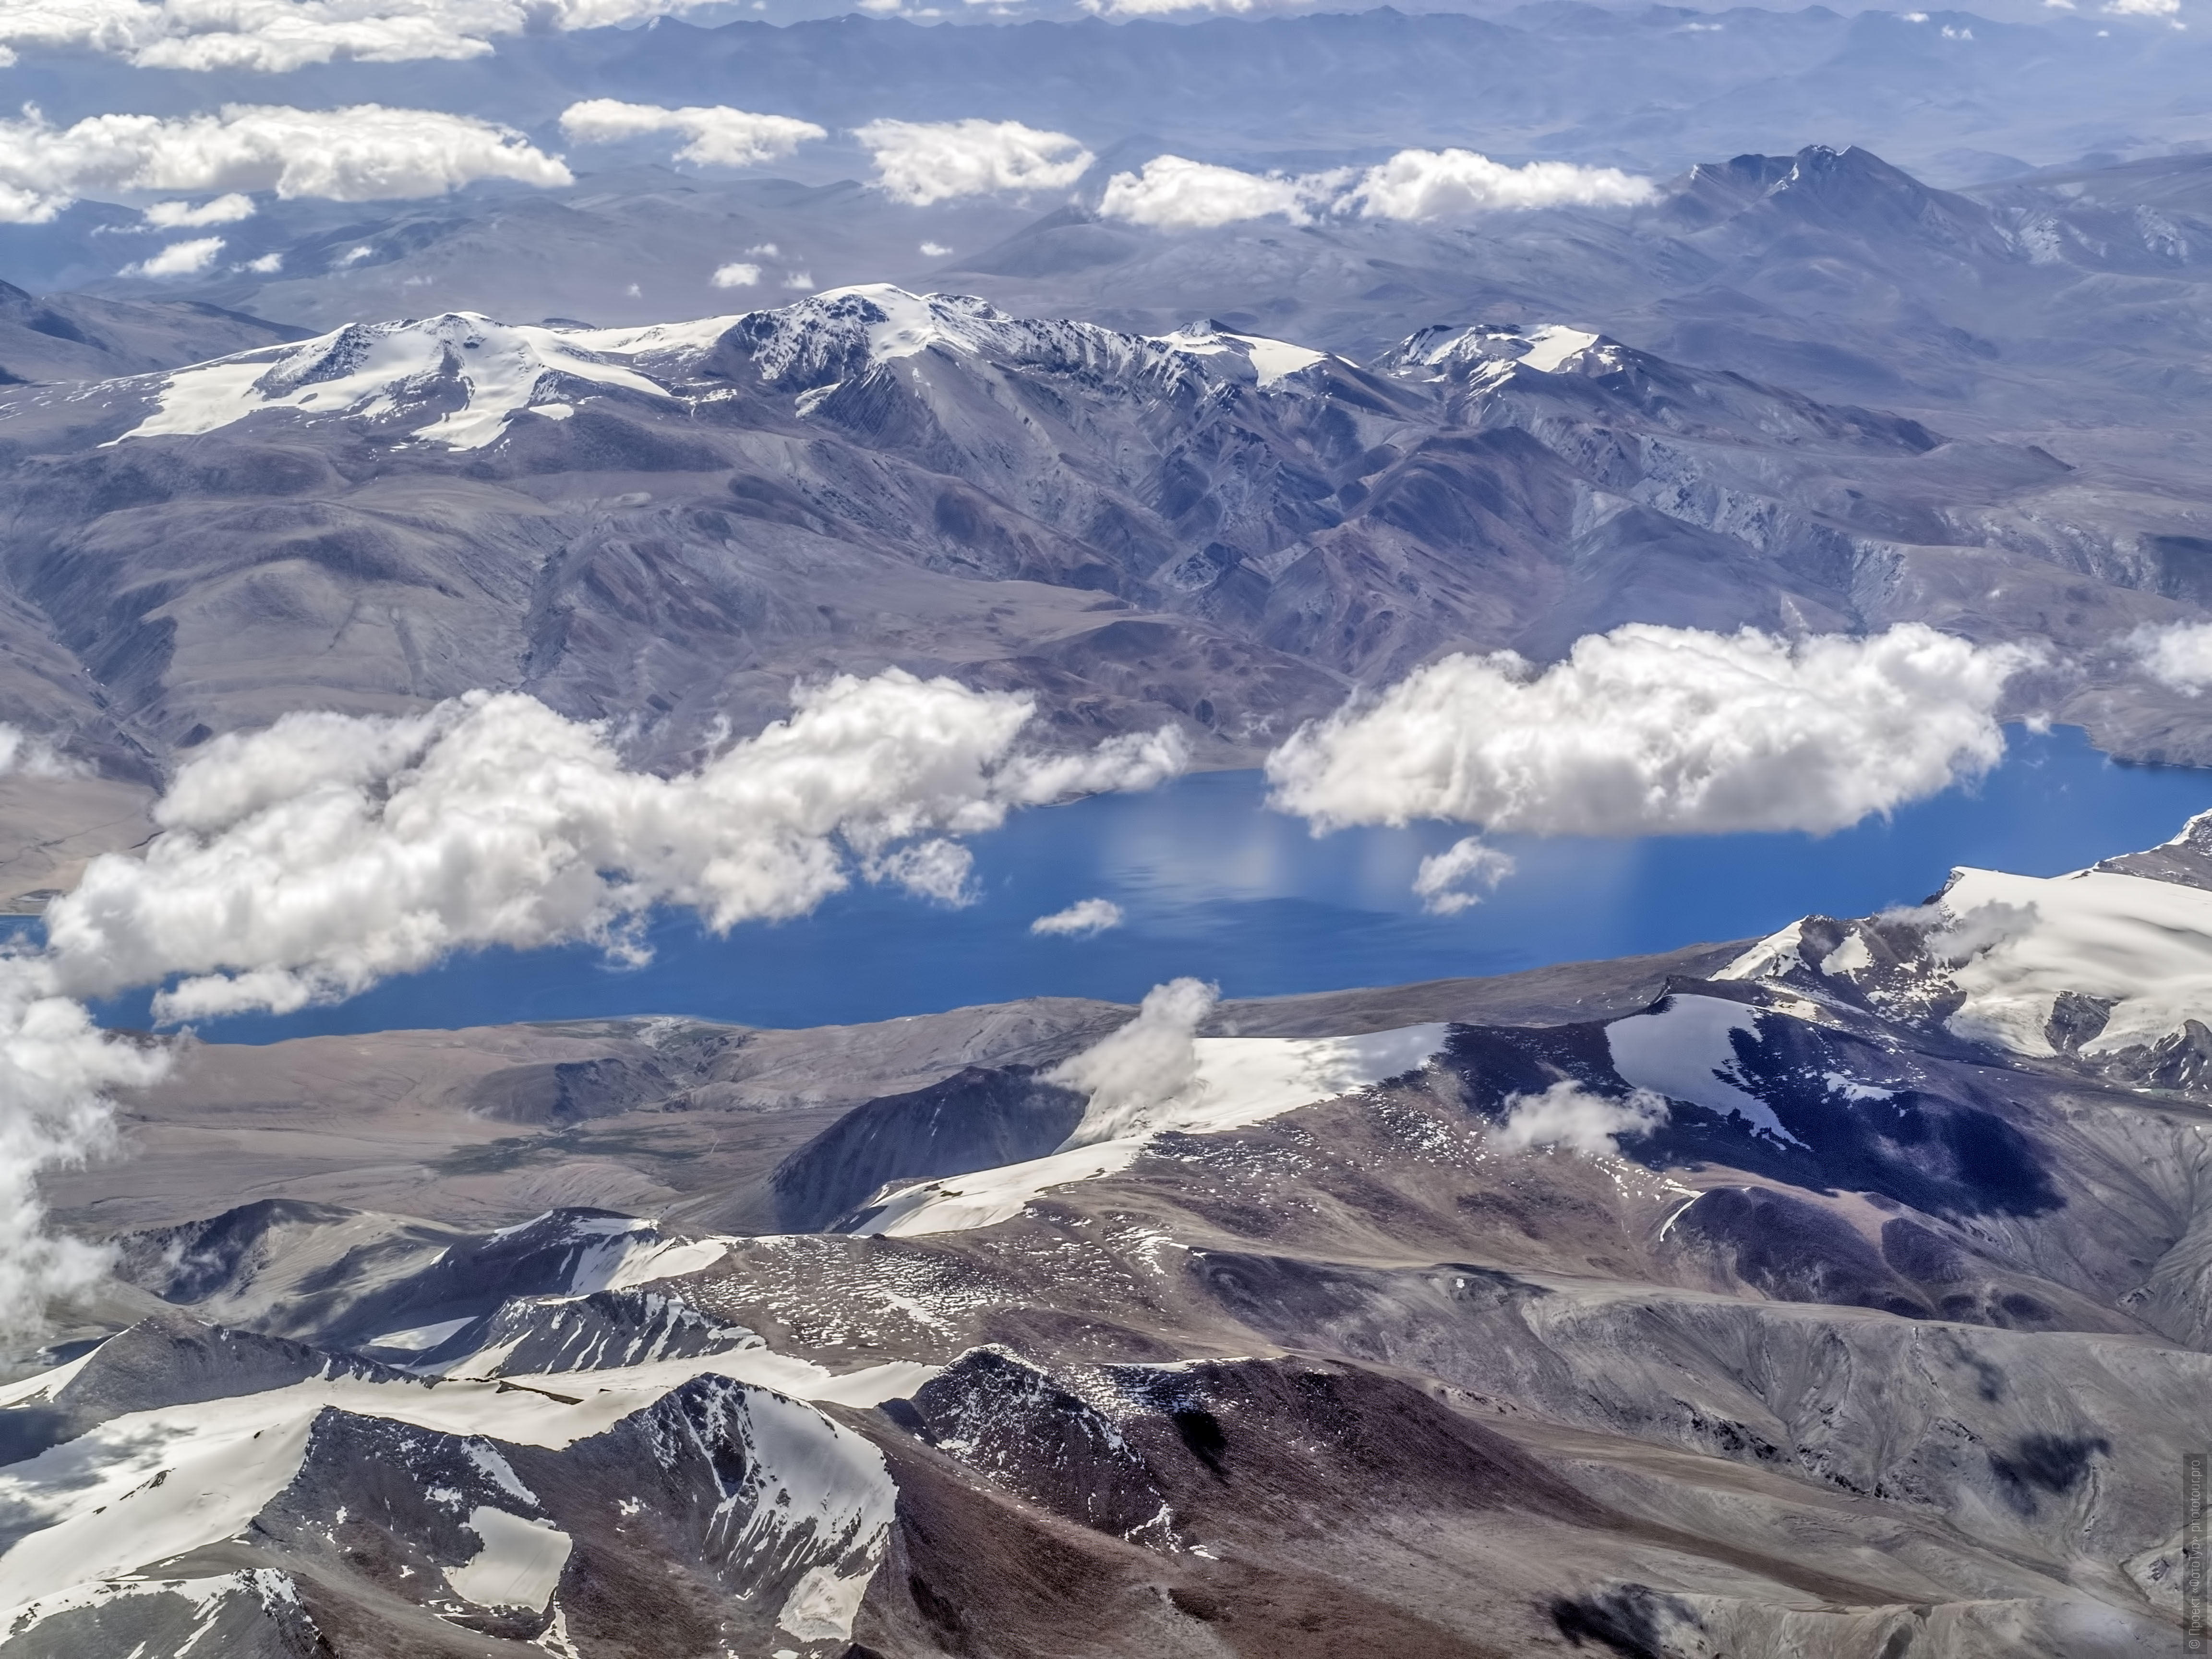 Lake Tso Moriri from an airplane. Photo tour / tour Tibet of Lake-1: Pangong, Tso Moriri, Tso Kar, Tso Chiagar, Dance of Tsam on Lake Pangong, 08.07.-17.07.2022.